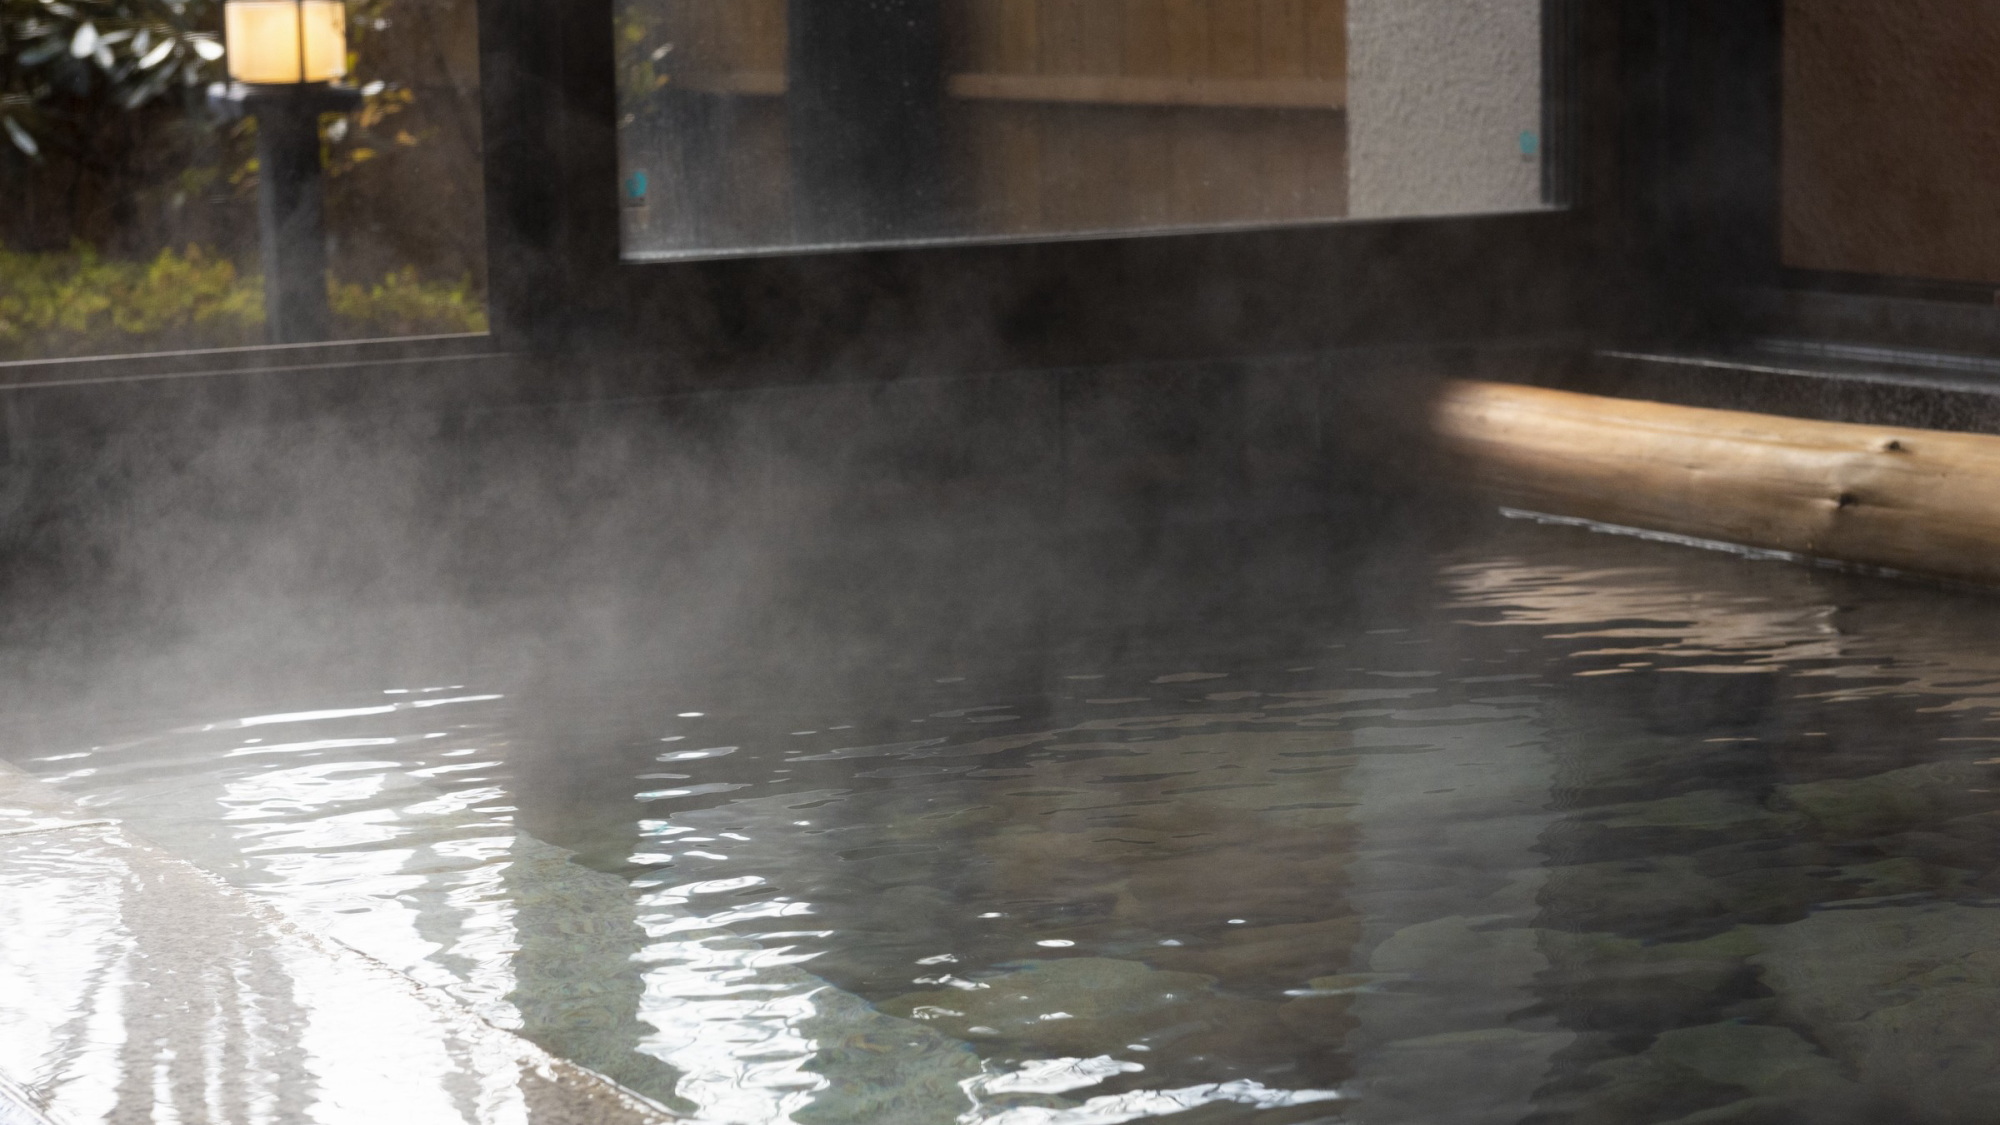 【温泉】男性用内湯・露天風呂、女性用内湯・露天風呂、貸切風呂2箇所で、それぞれ猿ヶ京温泉が楽しめます